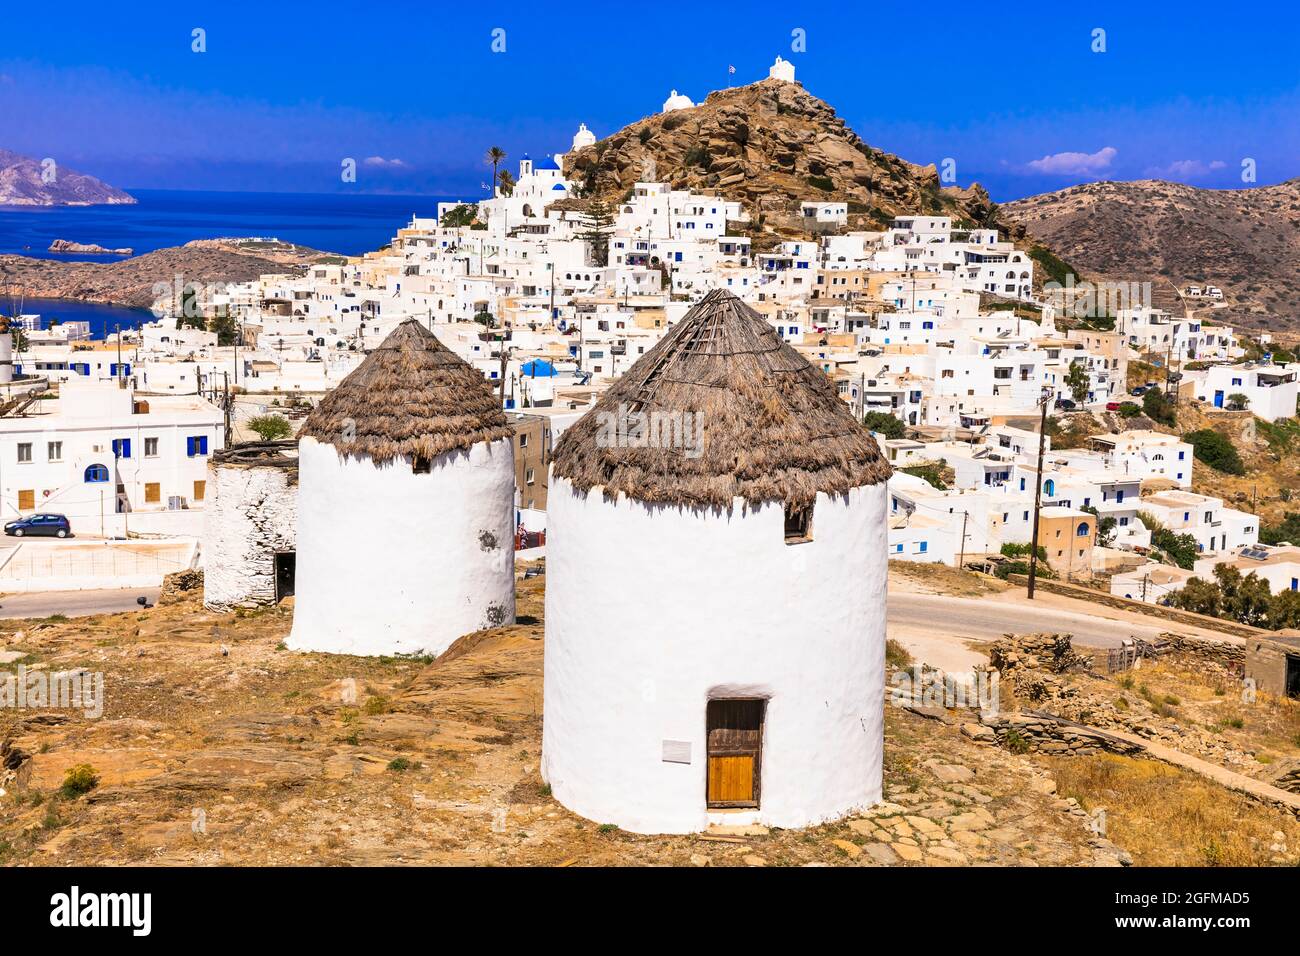 Grecia viaggi. CICLADI. Vecchi mulini a vento tradizionali dell'isola di iOS. Vista del villaggio di Chora Foto Stock